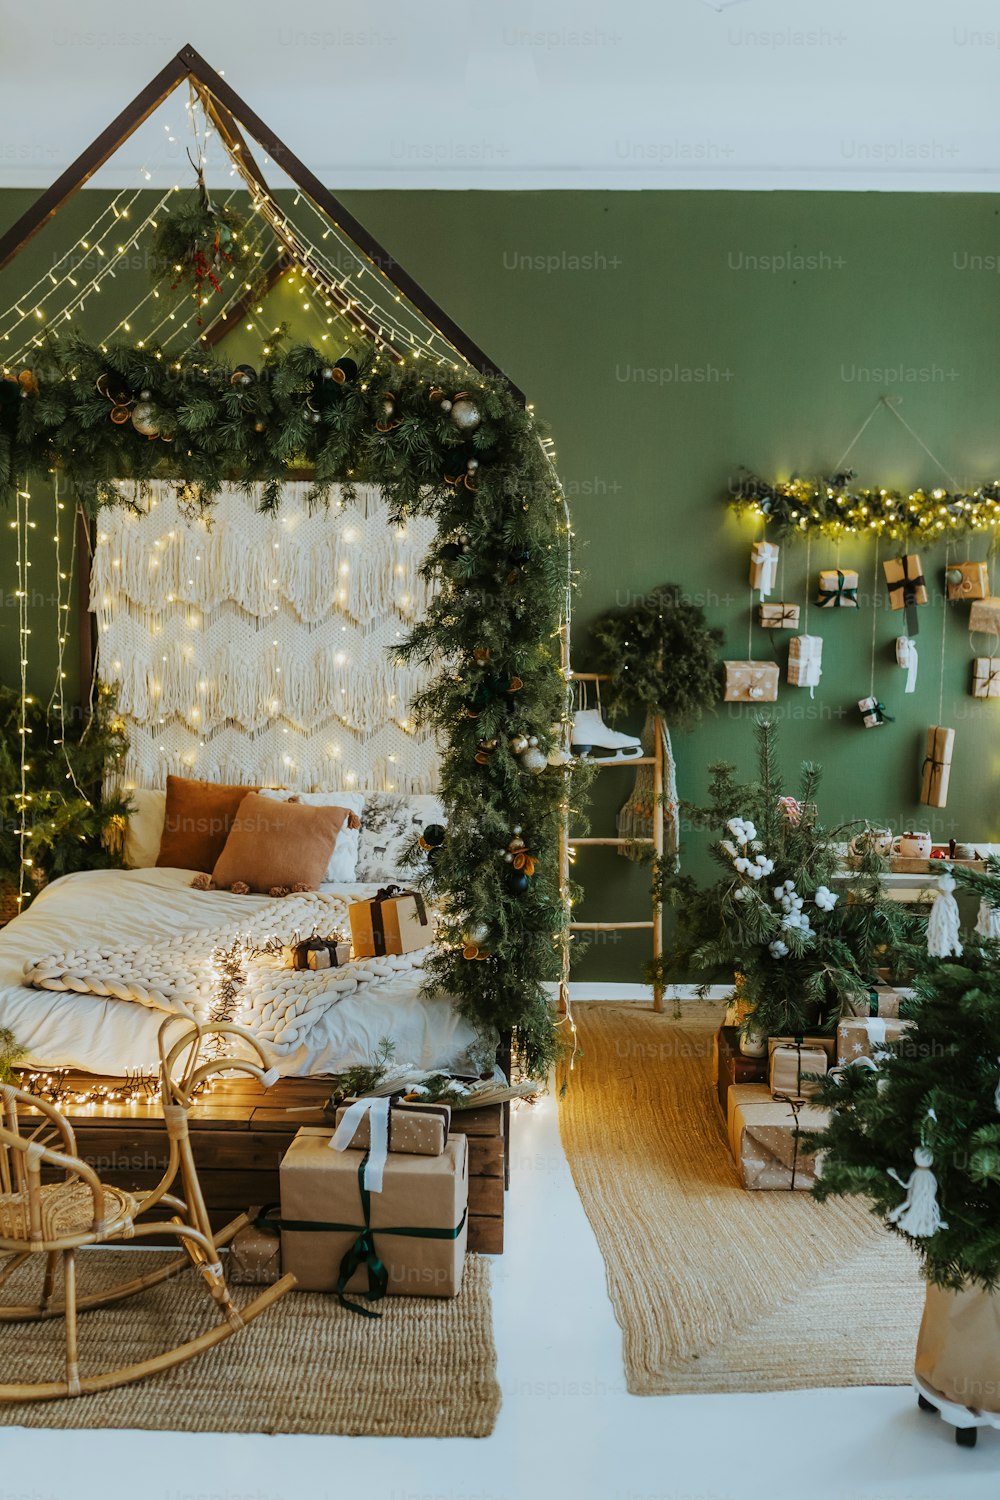 イルミネーションとプレゼントでクリスマスに飾られたベッドルーム